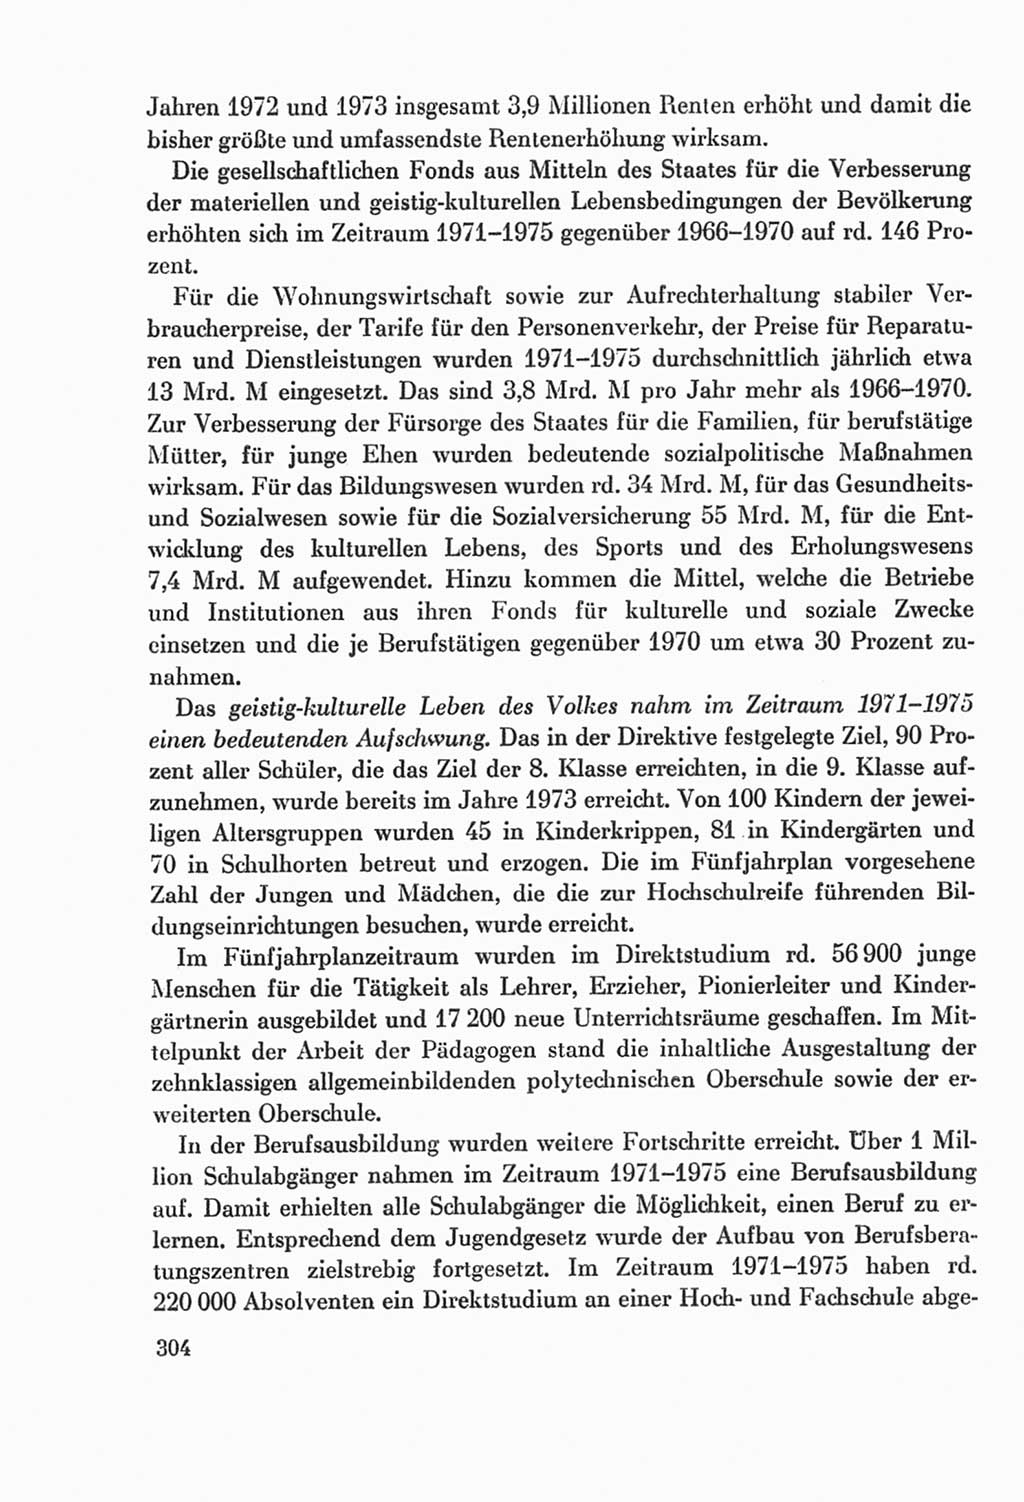 Protokoll der Verhandlungen des Ⅸ. Parteitages der Sozialistischen Einheitspartei Deutschlands (SED) [Deutsche Demokratische Republik (DDR)] 1976, Band 2, Seite 304 (Prot. Verh. Ⅸ. PT SED DDR 1976, Bd. 2, S. 304)